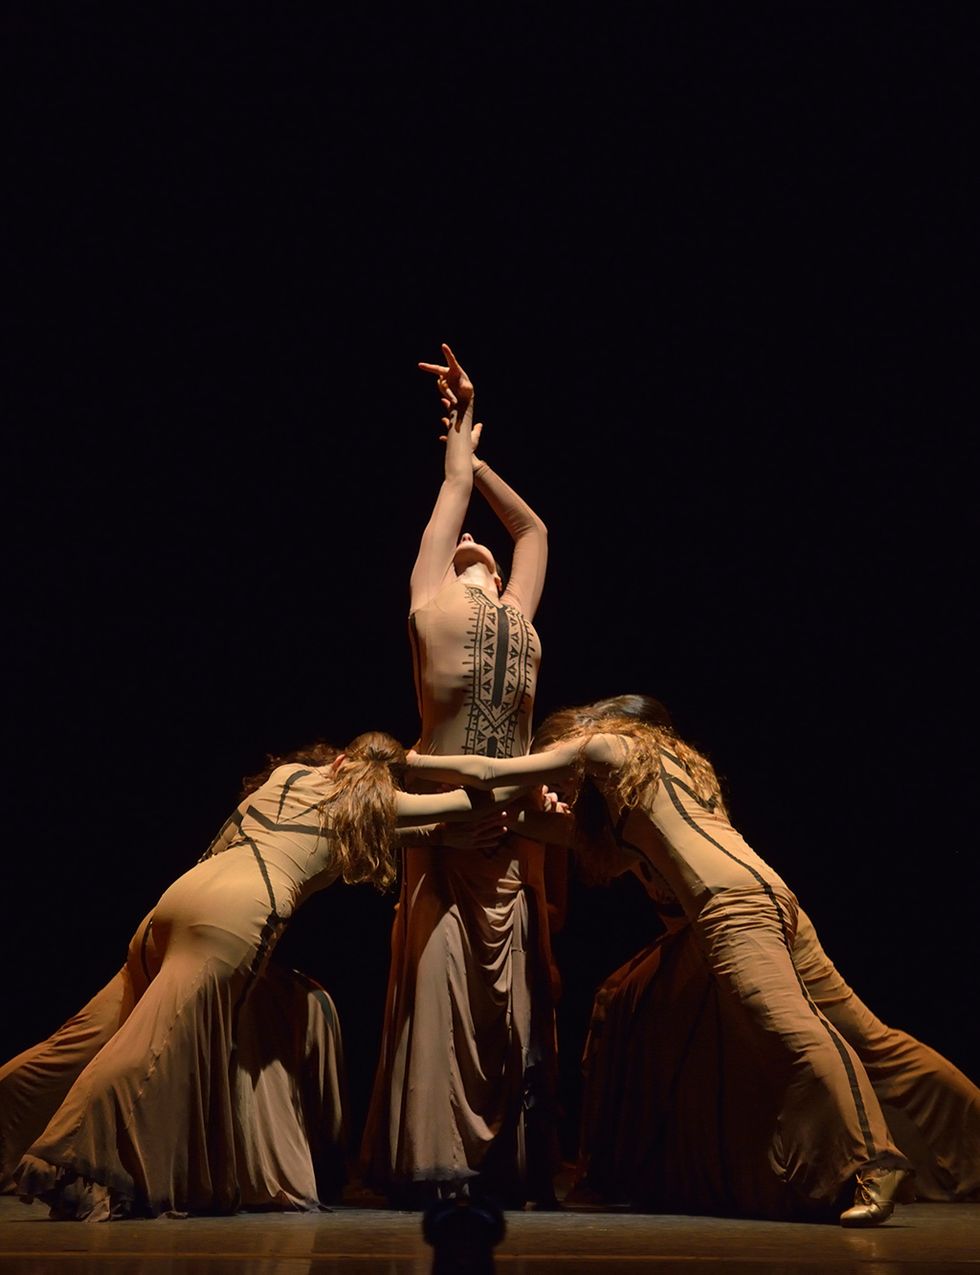 <p>Los Teatros del Canal de Madrid acaba de estrenar<strong> ‘Yo, Carmen’,</strong> un espectáculo en el que la bailaora y coreógrafa María Pagés adapta ciertos fragmentos de la ópera de Bizet, para levantar la voz en favor de una mujer real a través del arte. Siete mujeres sobre el escenario en un espectáculo de cante y baile que va mucho más allá del flamenco. Compruébalo de miércoles a sábado a las 20 h y los domingos a las 18.30 h. Entradas a partir de 18,60 € en <a href="http://www.teatroscanal.com/espectaculo/yo-carmen-maria-pages/" target="_blank">www.teatroscanal.com.</a></p>